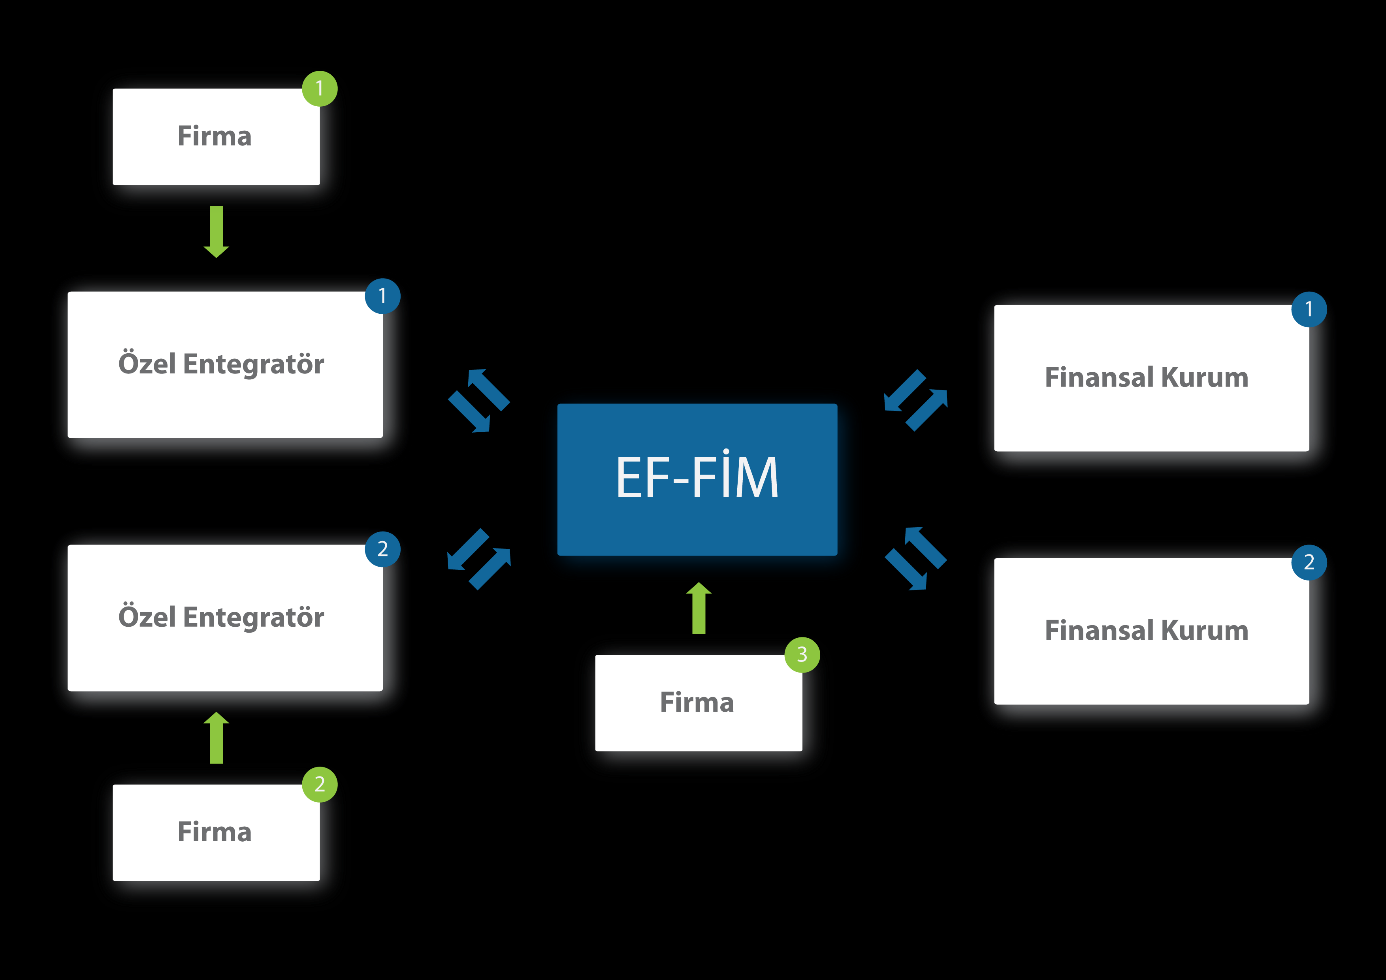 1 GİRİŞ 3 efinans Finansal İşlemler Modülü (EF-FIM), finansal işlem yapan kurumlar (bankalar, faktöring kuruluşları, ) ile diğer özel entegratörler ve finansal kurumların hizmetlerinden yararlanmak